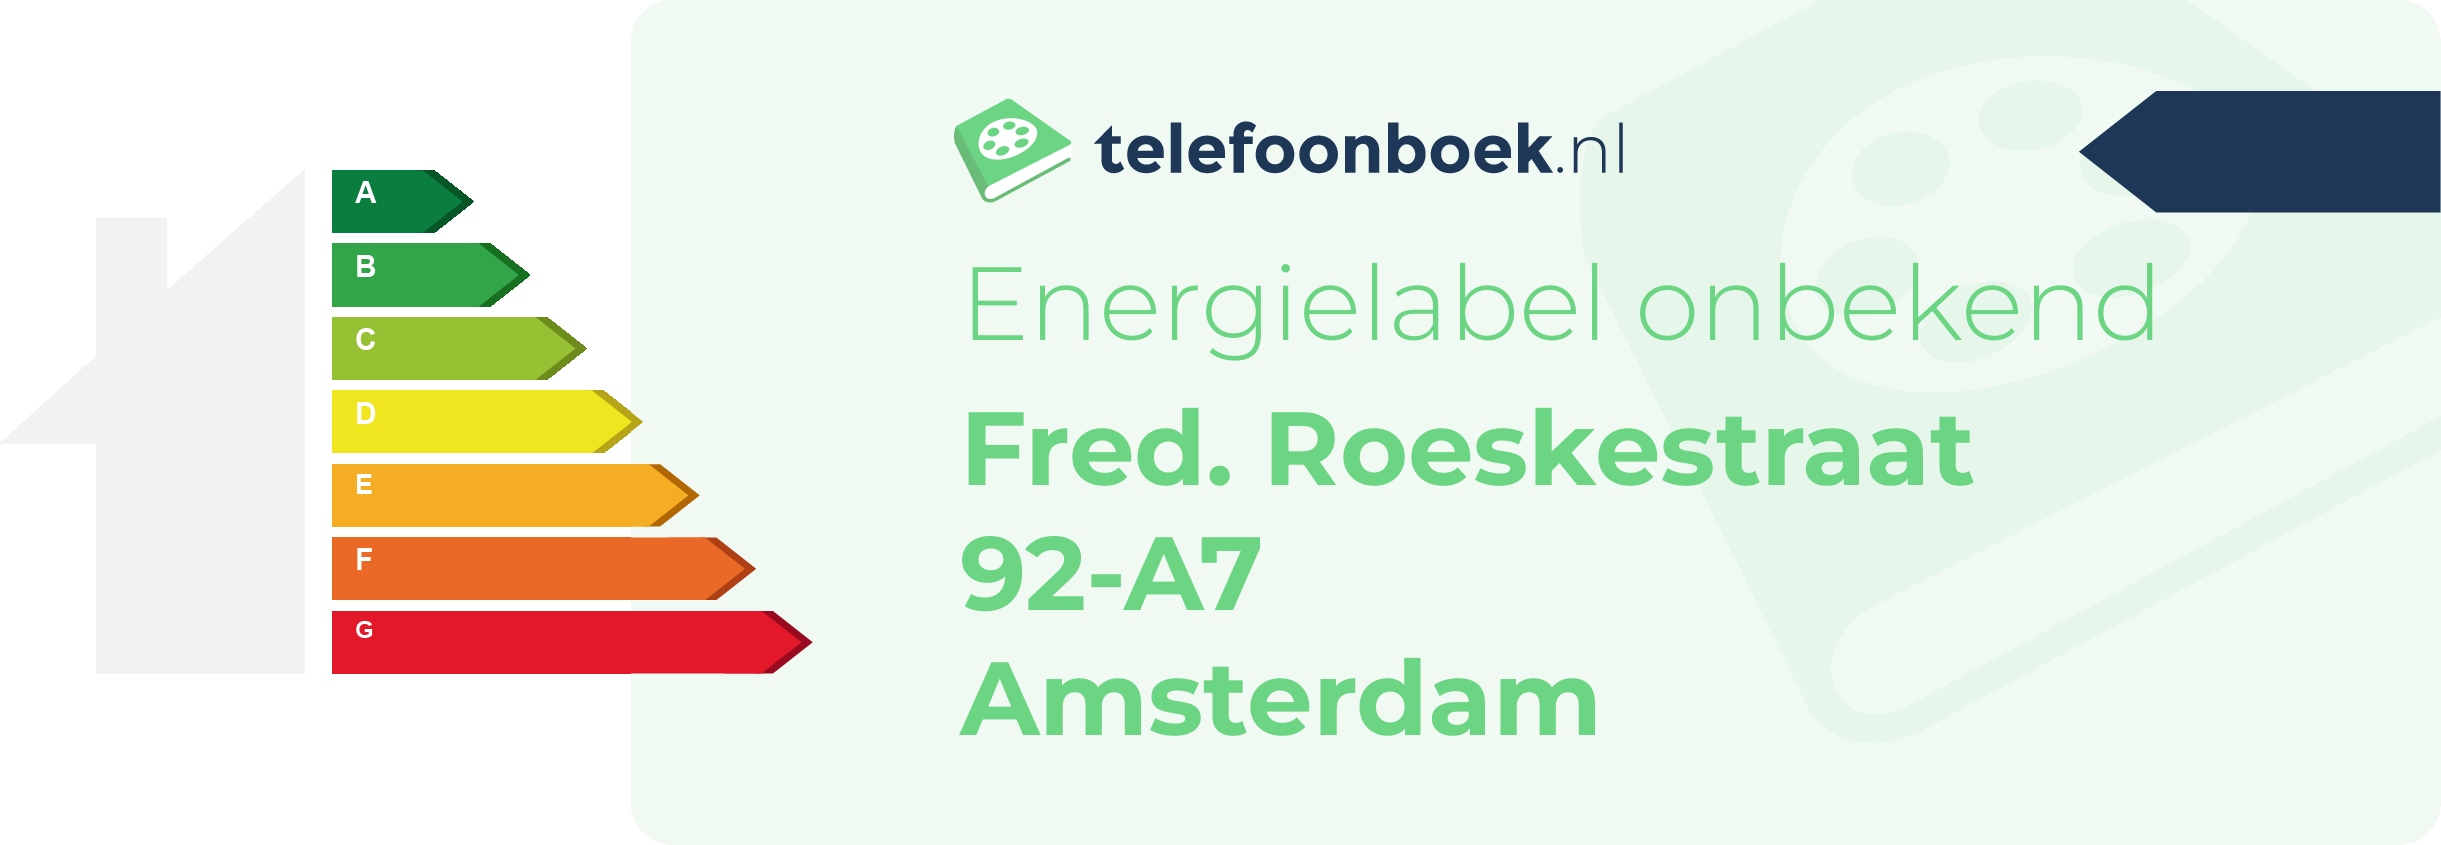 Energielabel Fred. Roeskestraat 92-A7 Amsterdam